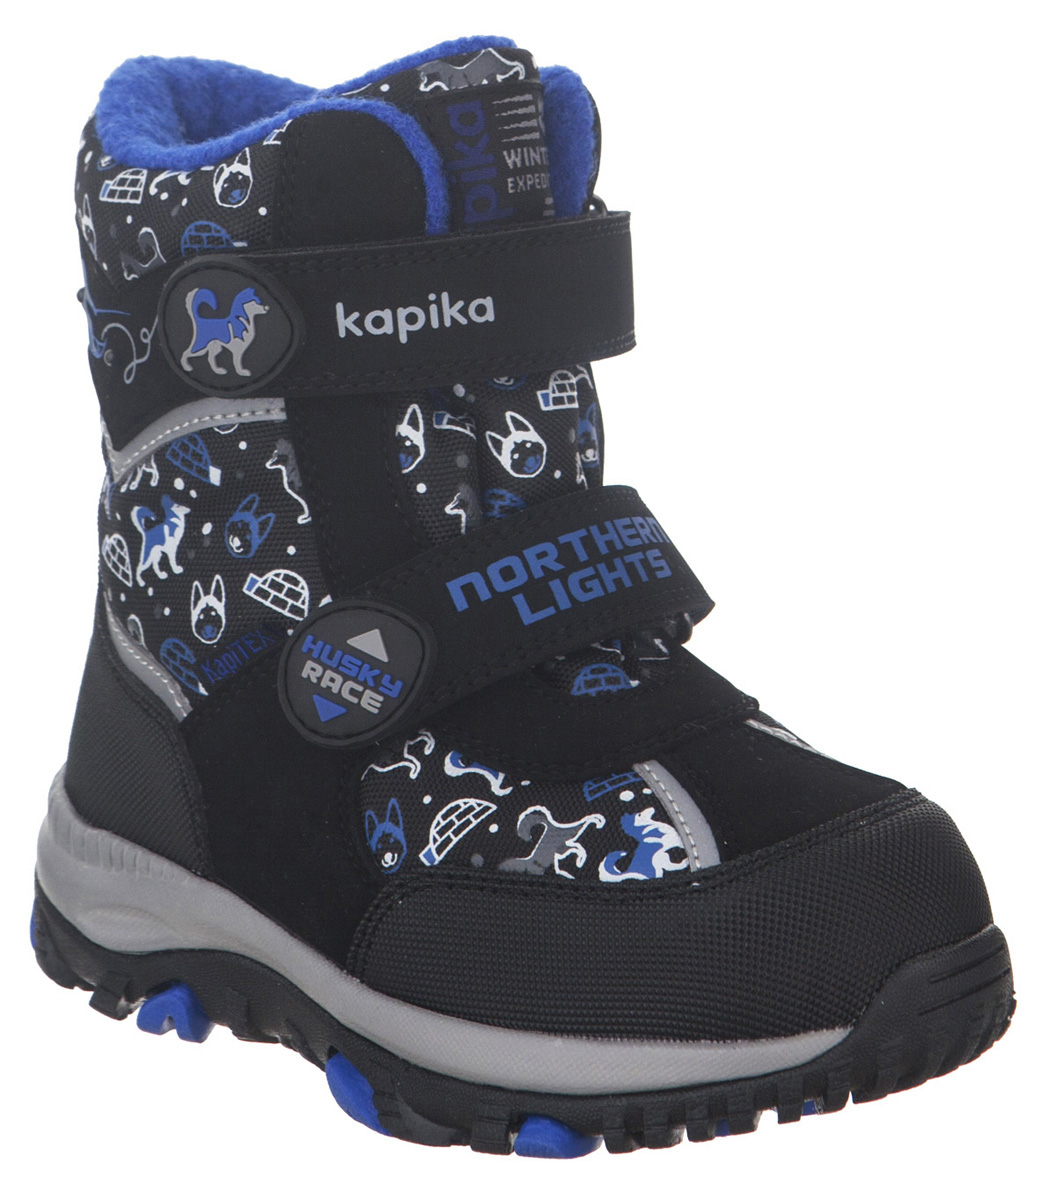 Ботинки для мальчика Kapika KapiTEX, цвет: черный. 41211-1. Размер 25